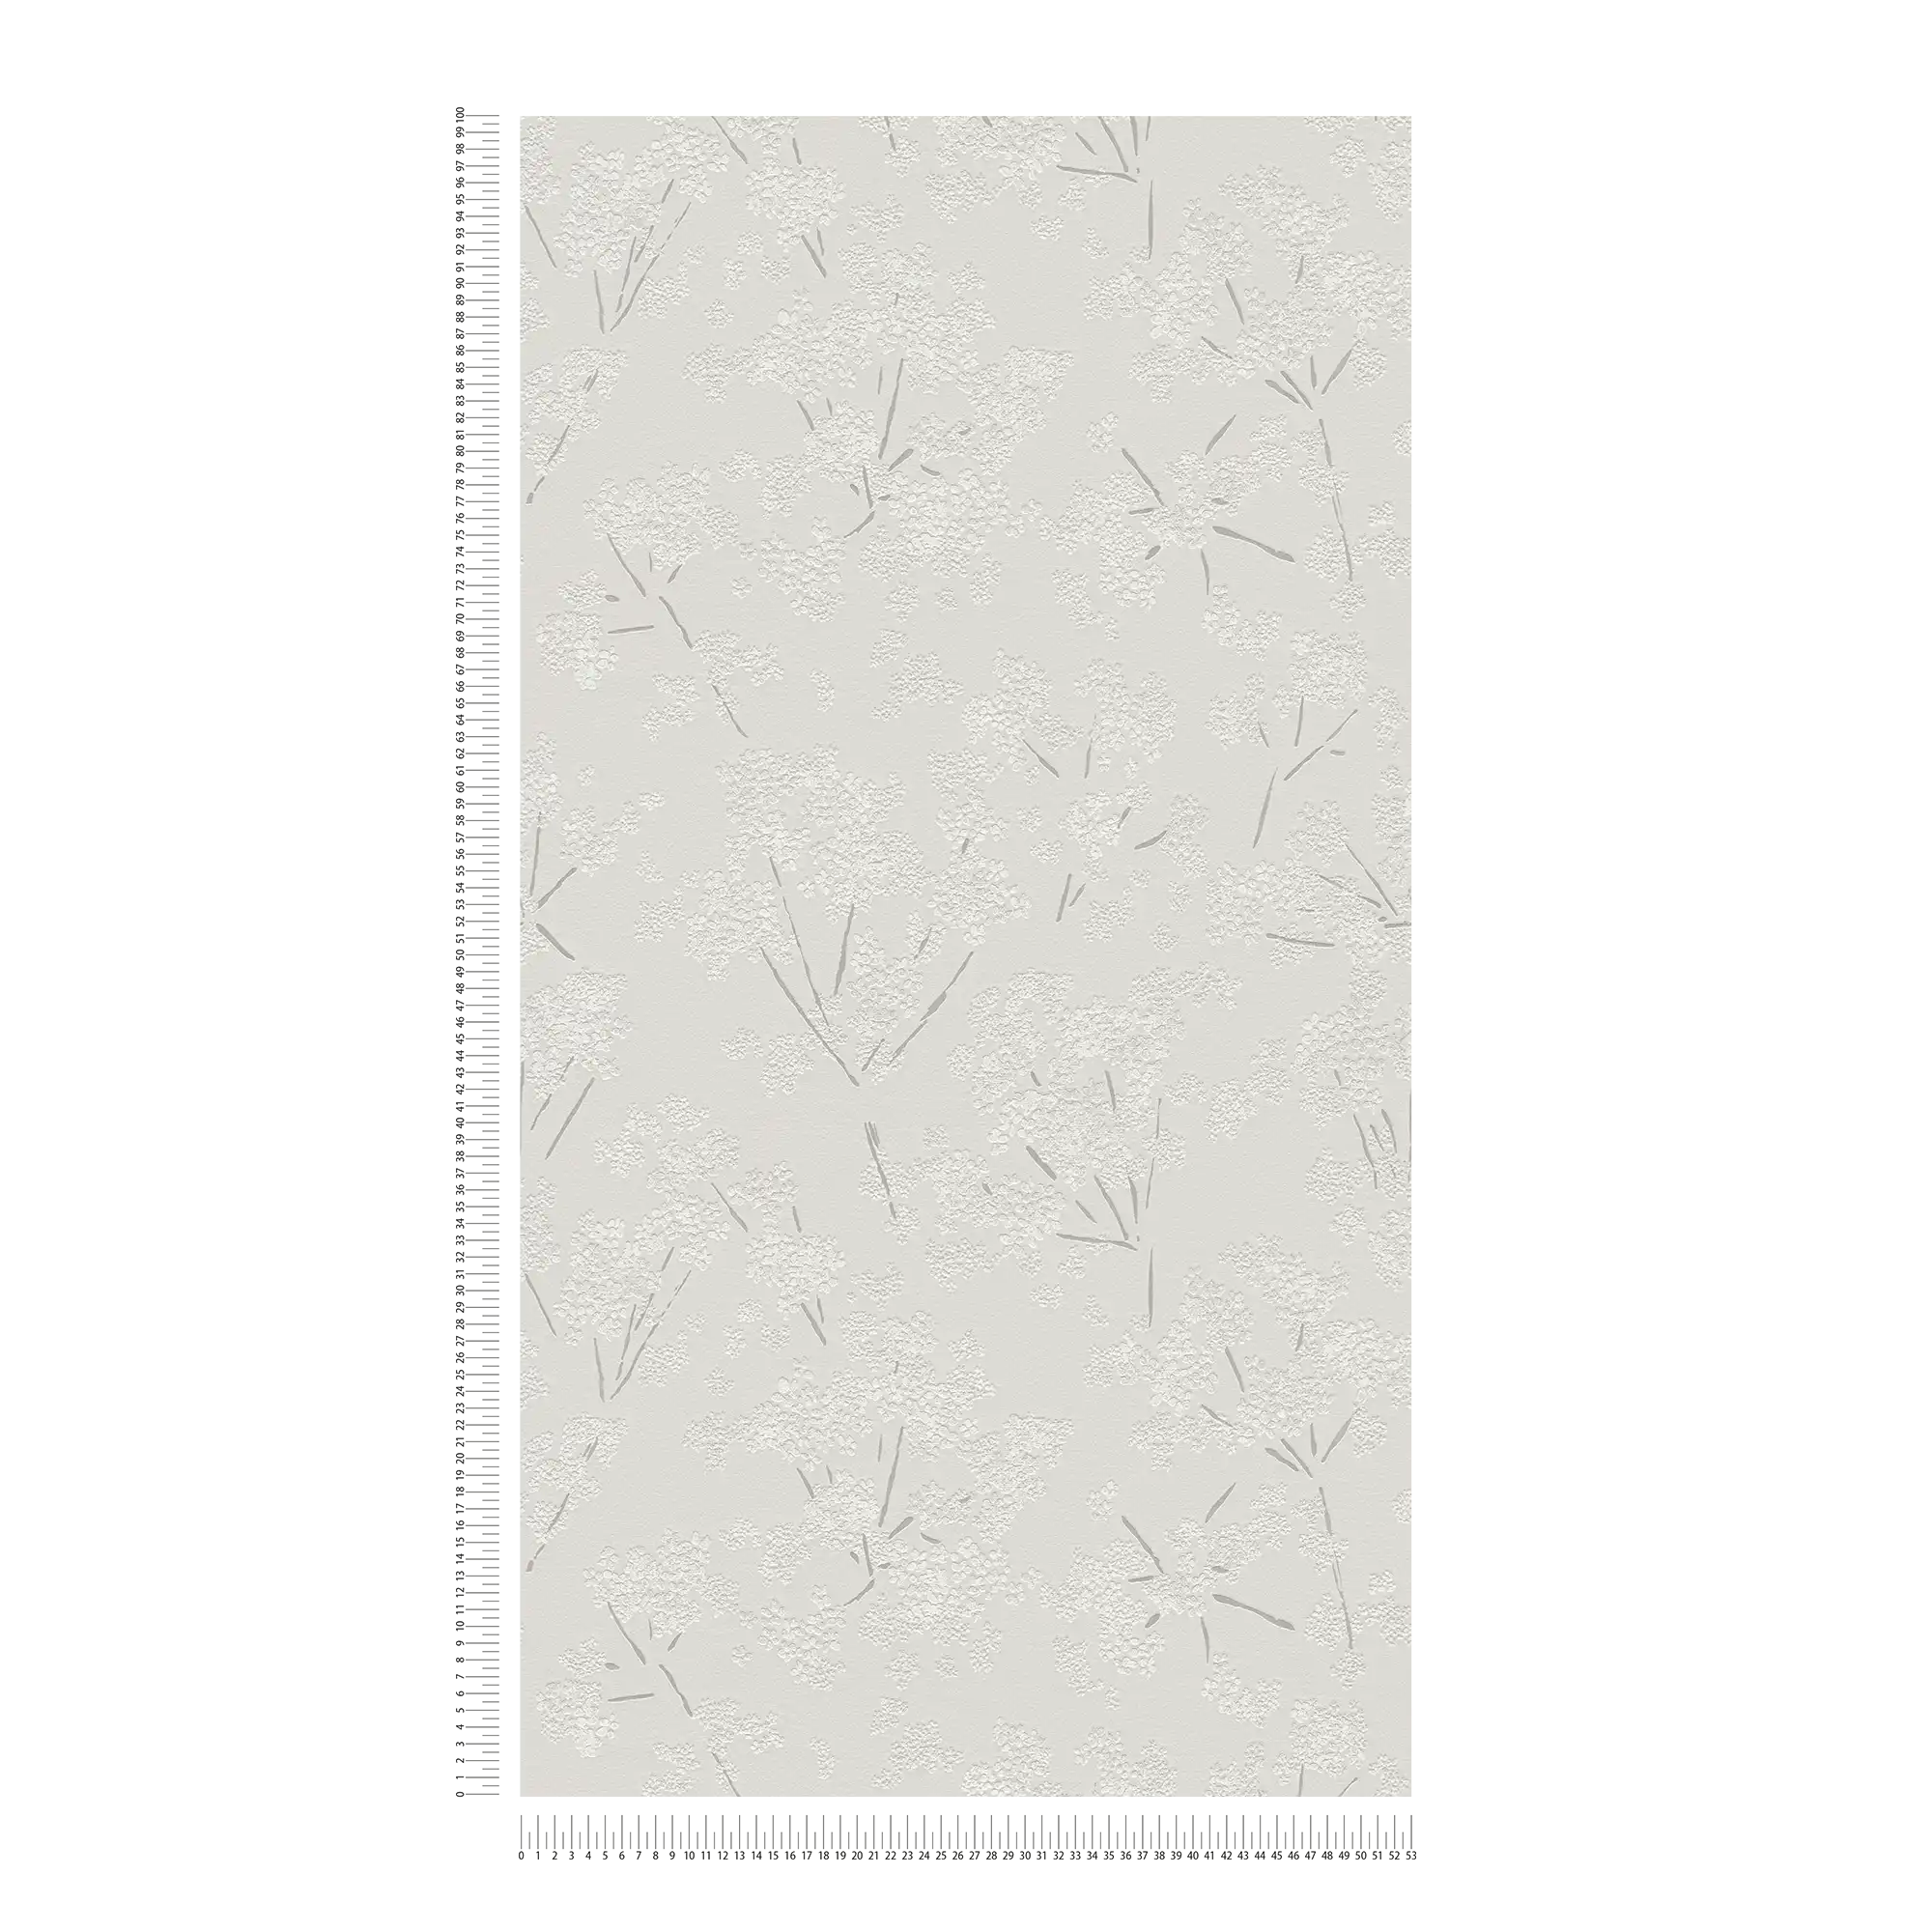             Carta da parati non tessuta con motivo floreale astratto - grigio, bianco
        